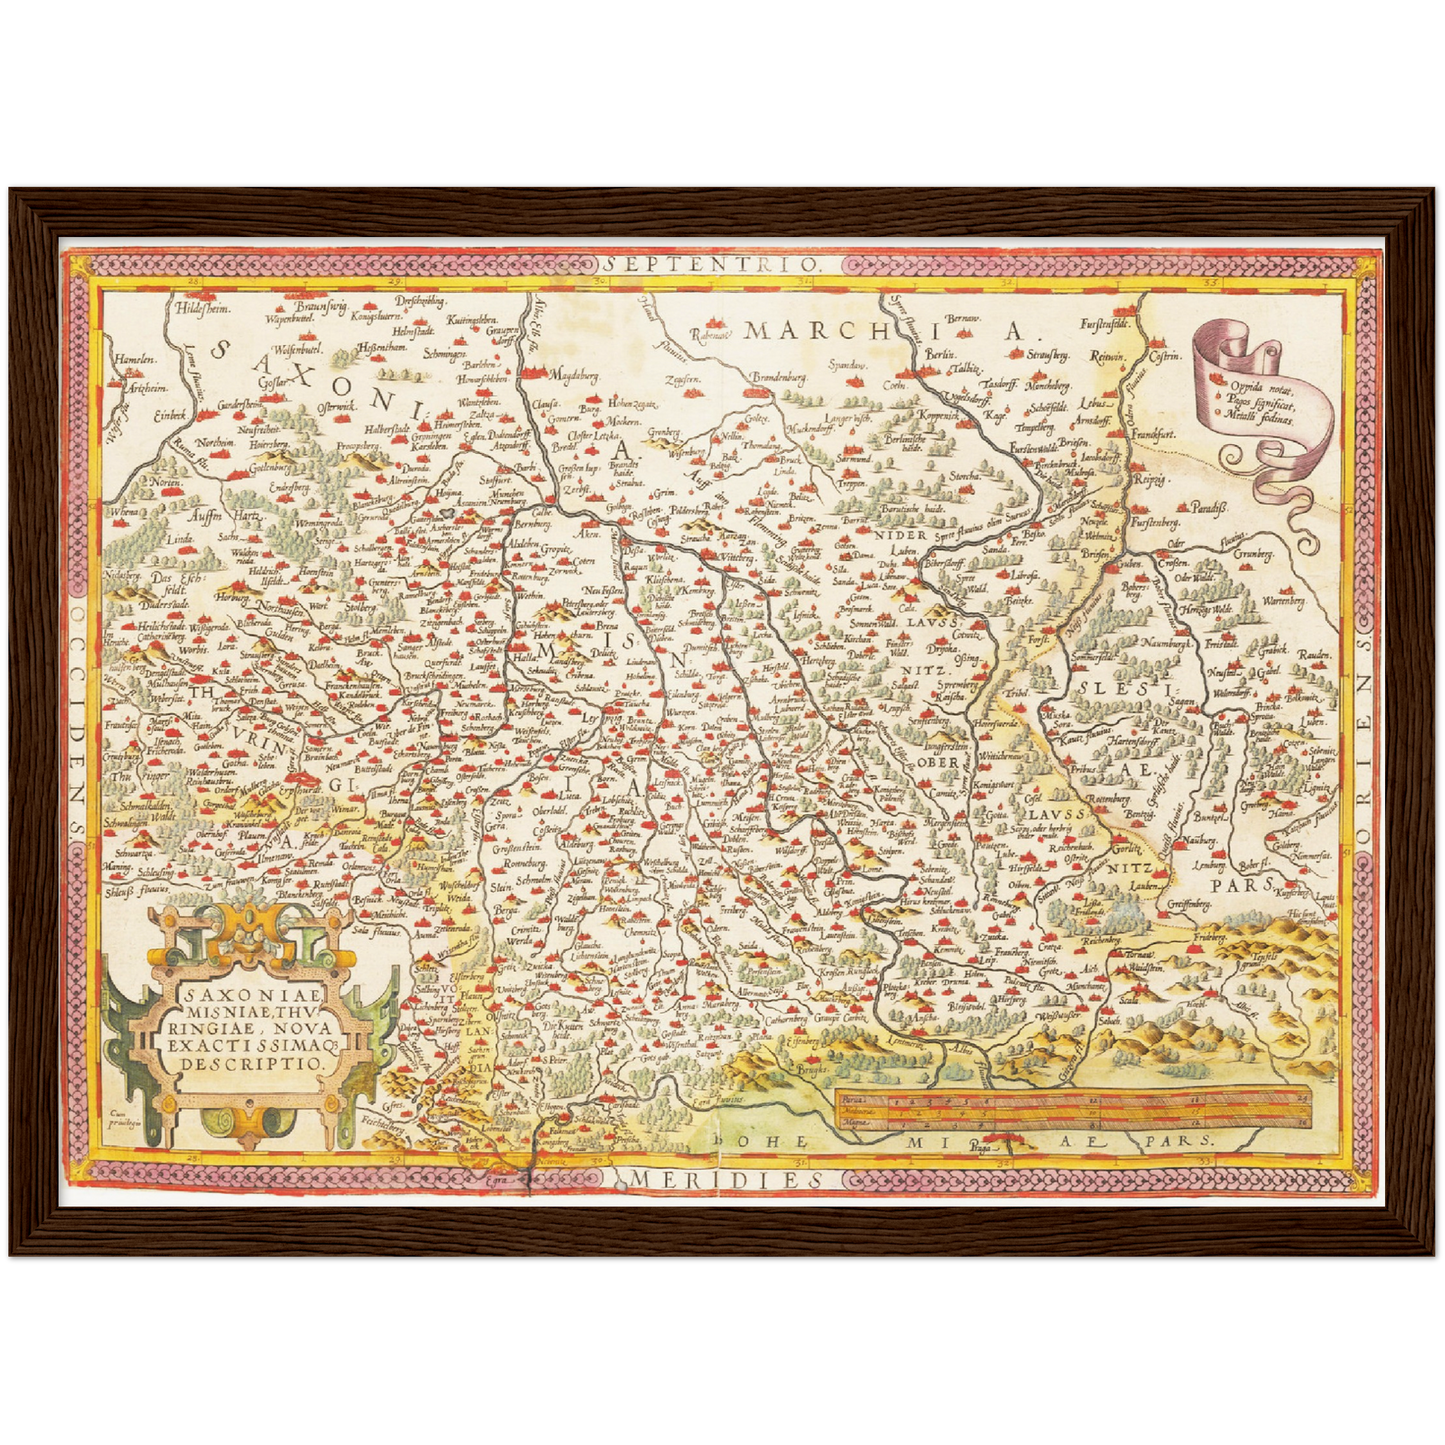 Historische Landkarte Sachsen um 1609